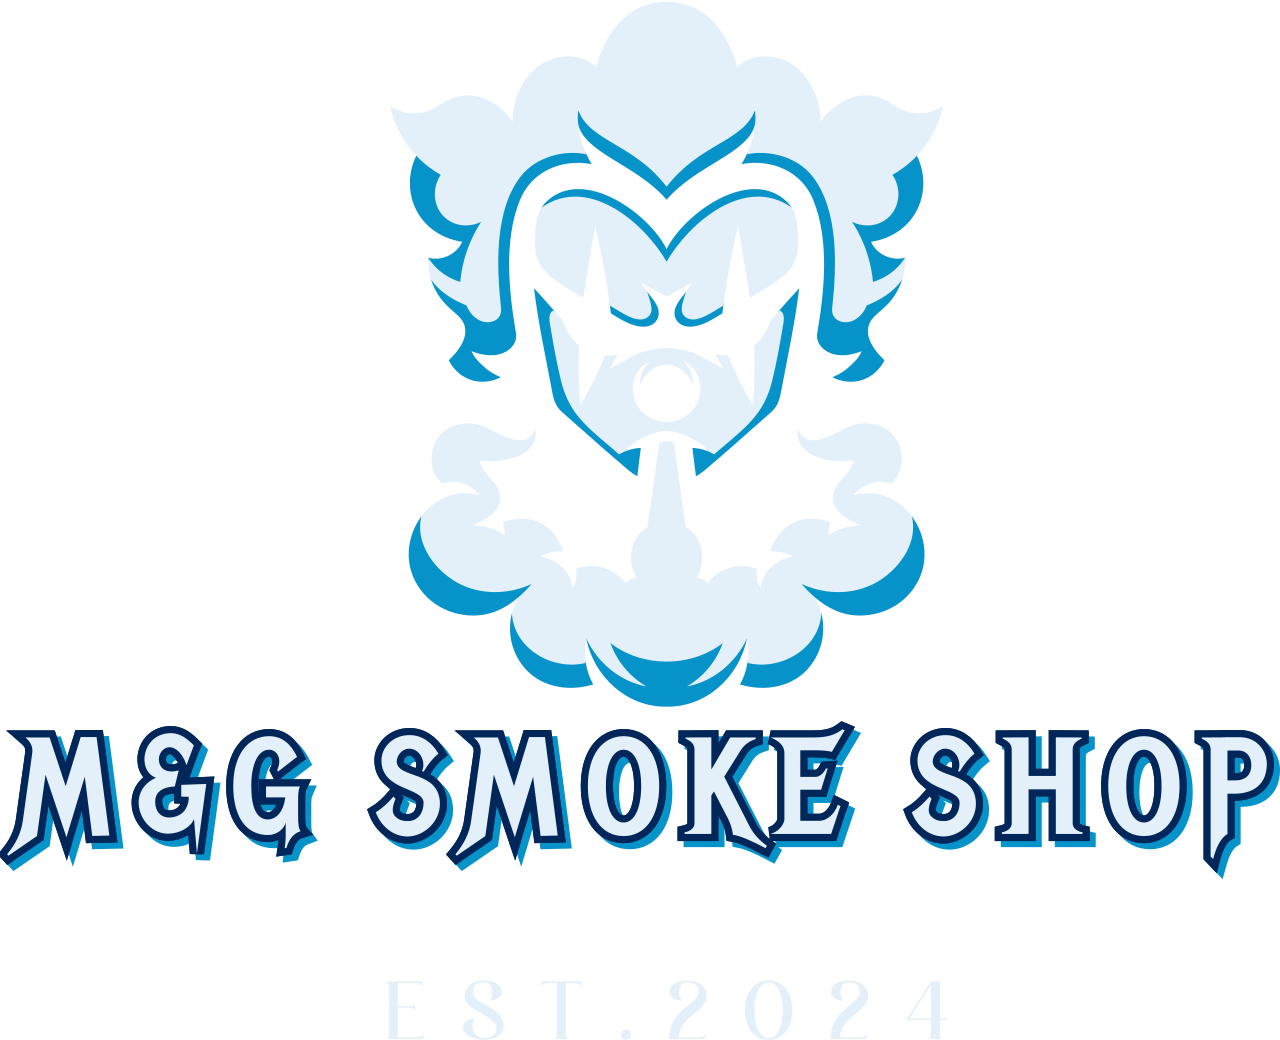 M&G SMOKE SHOP 's logo